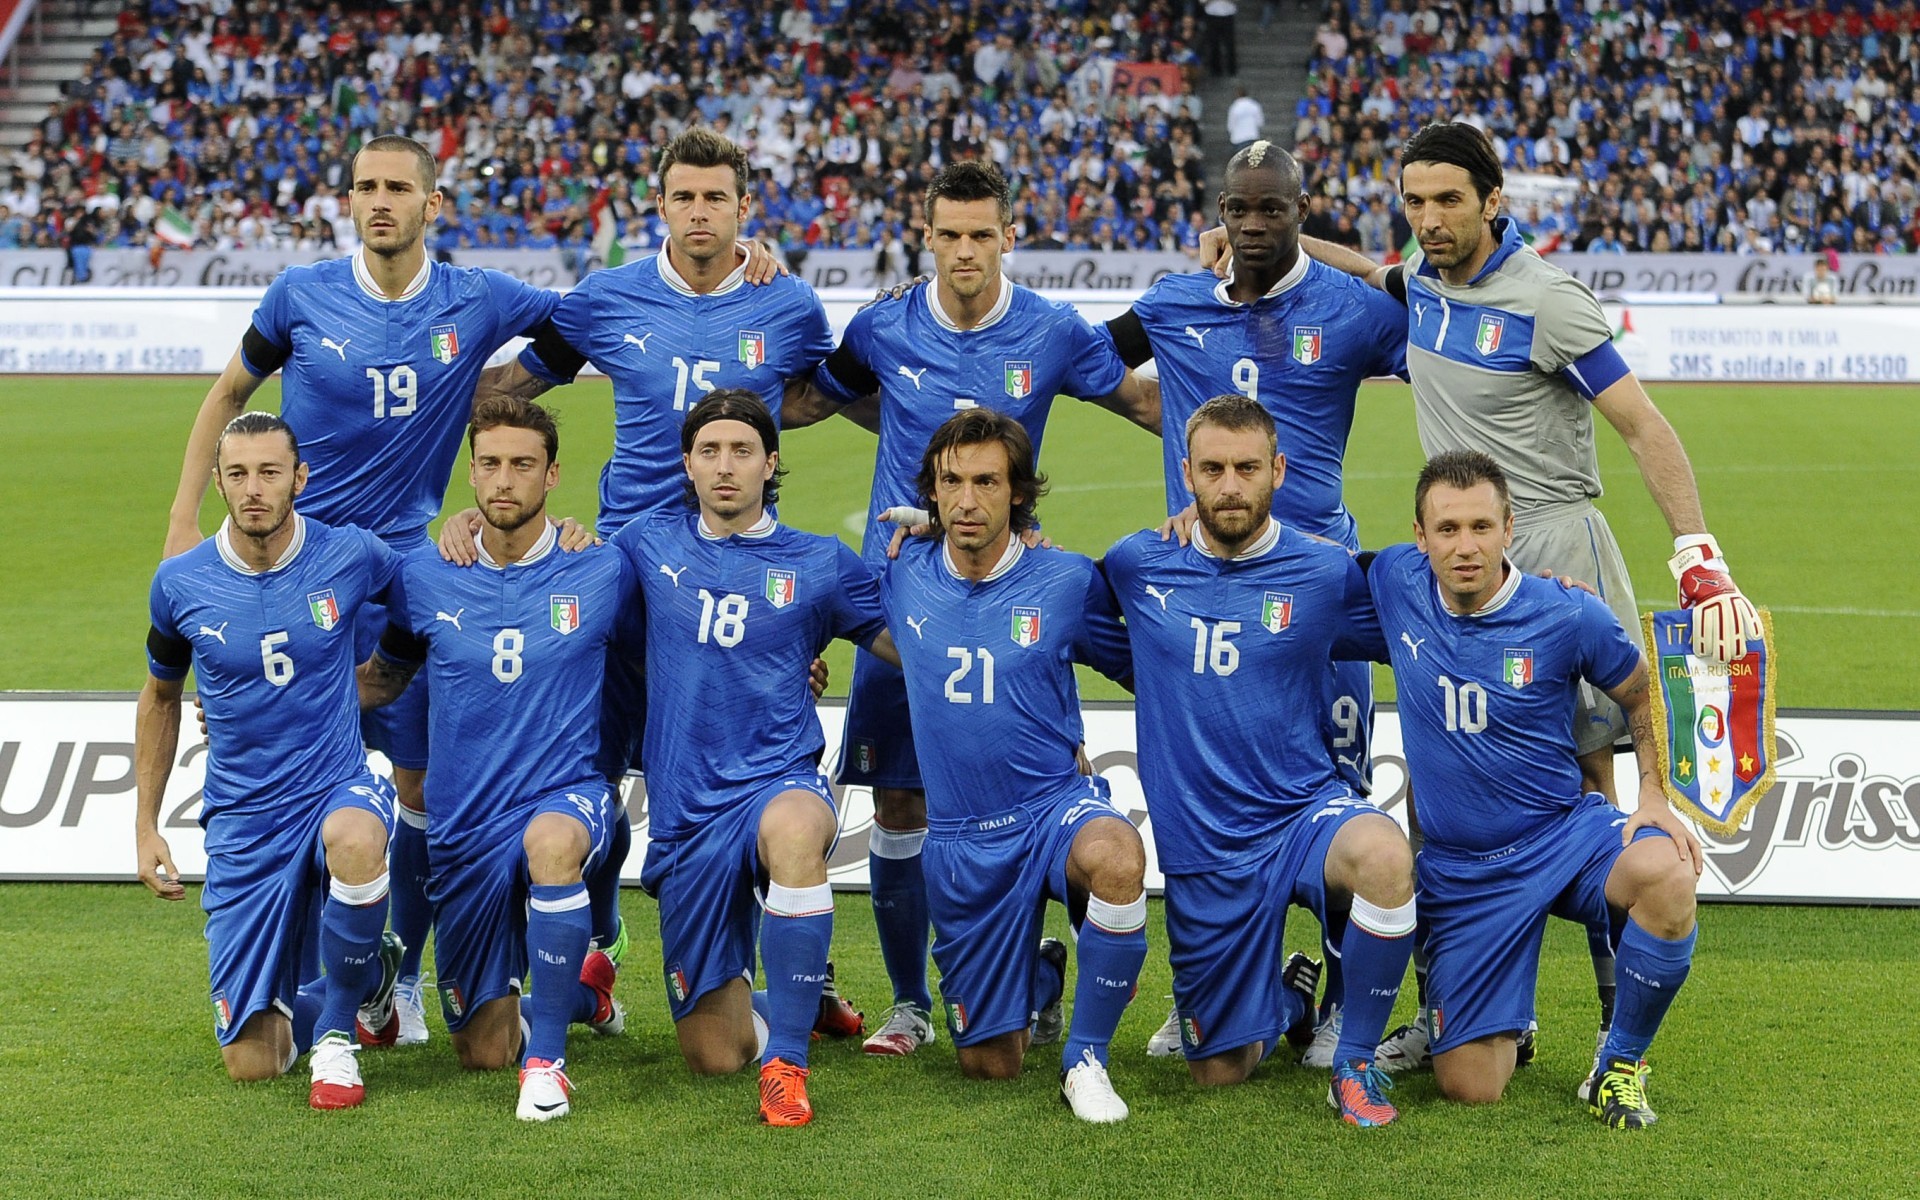 Сборная италии по футболу 2006